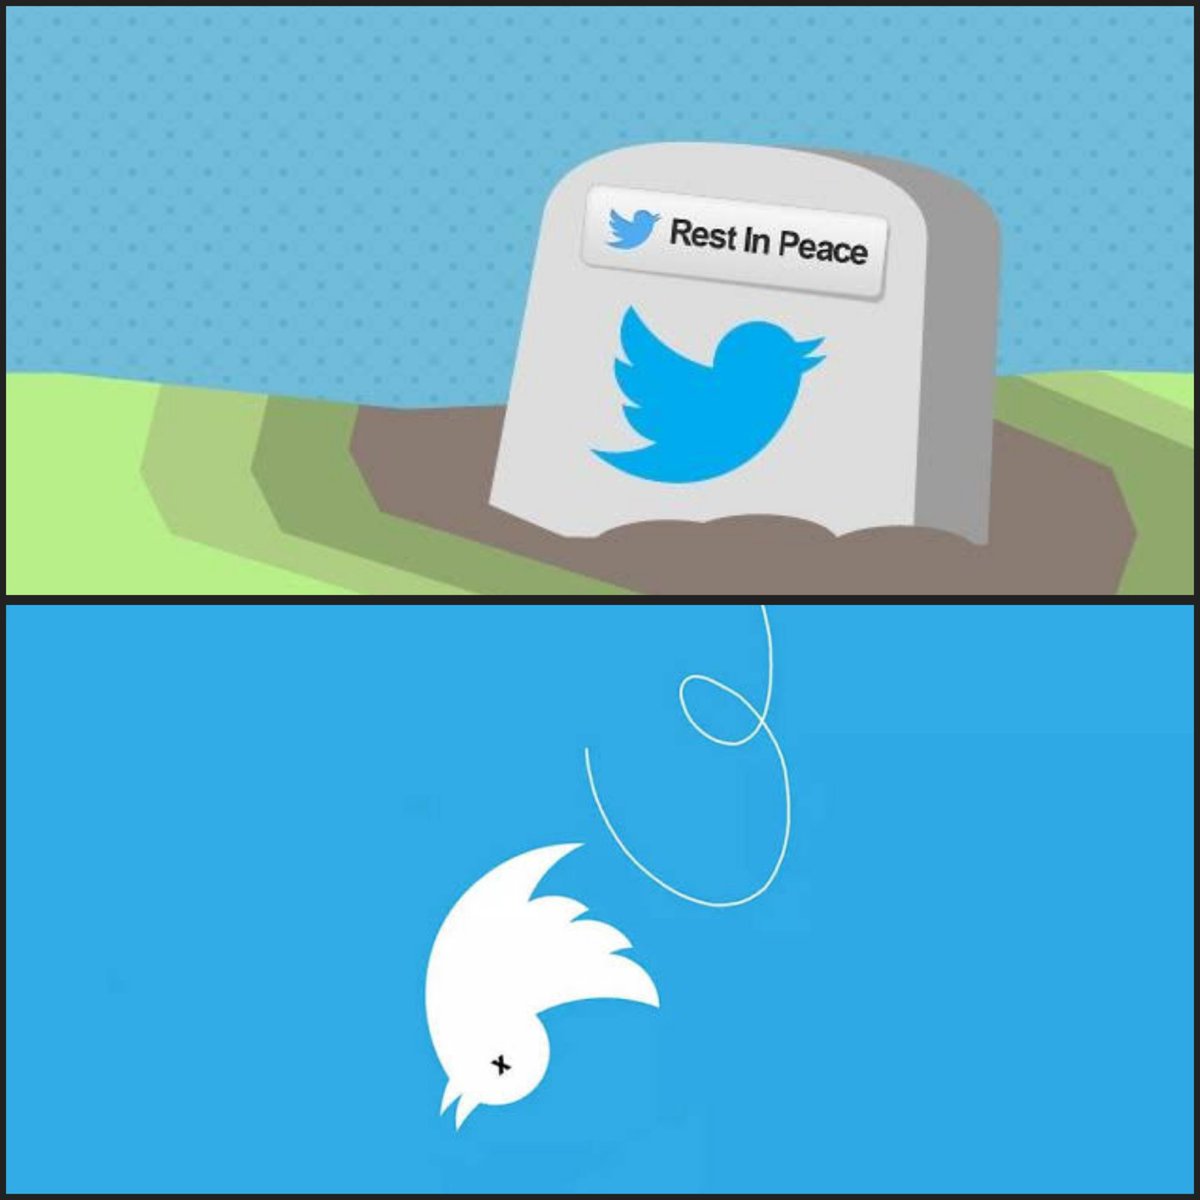 🚨| OFICIALMENTE HOY ES NUESTRO ÚLTIMO DÍA EN TWITTER

Durante más de una década el pájaro azul de Twitter () ha simbolizado perfectamente la naturaleza de un tweet (pío/piar en español): transmitir información de manera rápida y corta como el sonido de un pájaro. 

Pero hoy…